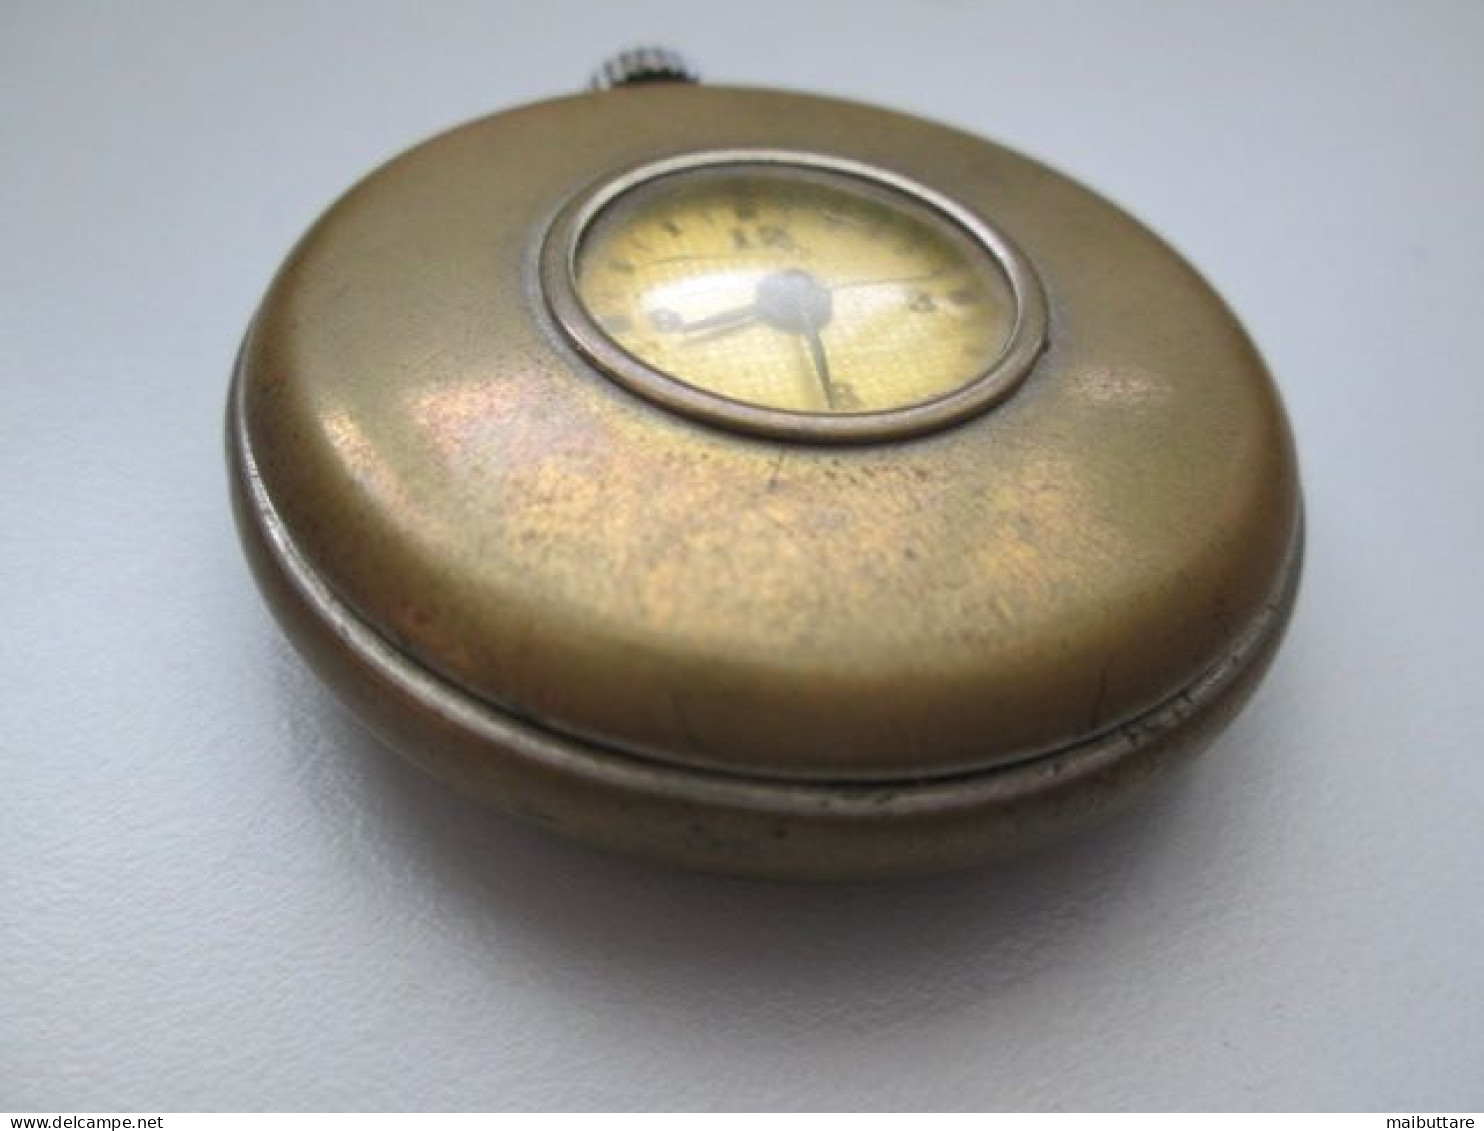 Orologio Da Tasca Made In Usa - Occhio Di Bue Diametro Complessivo Cm. 5 Diametro Quadrante Cm. 2 Oggetto Da Collezione - Watches: Old